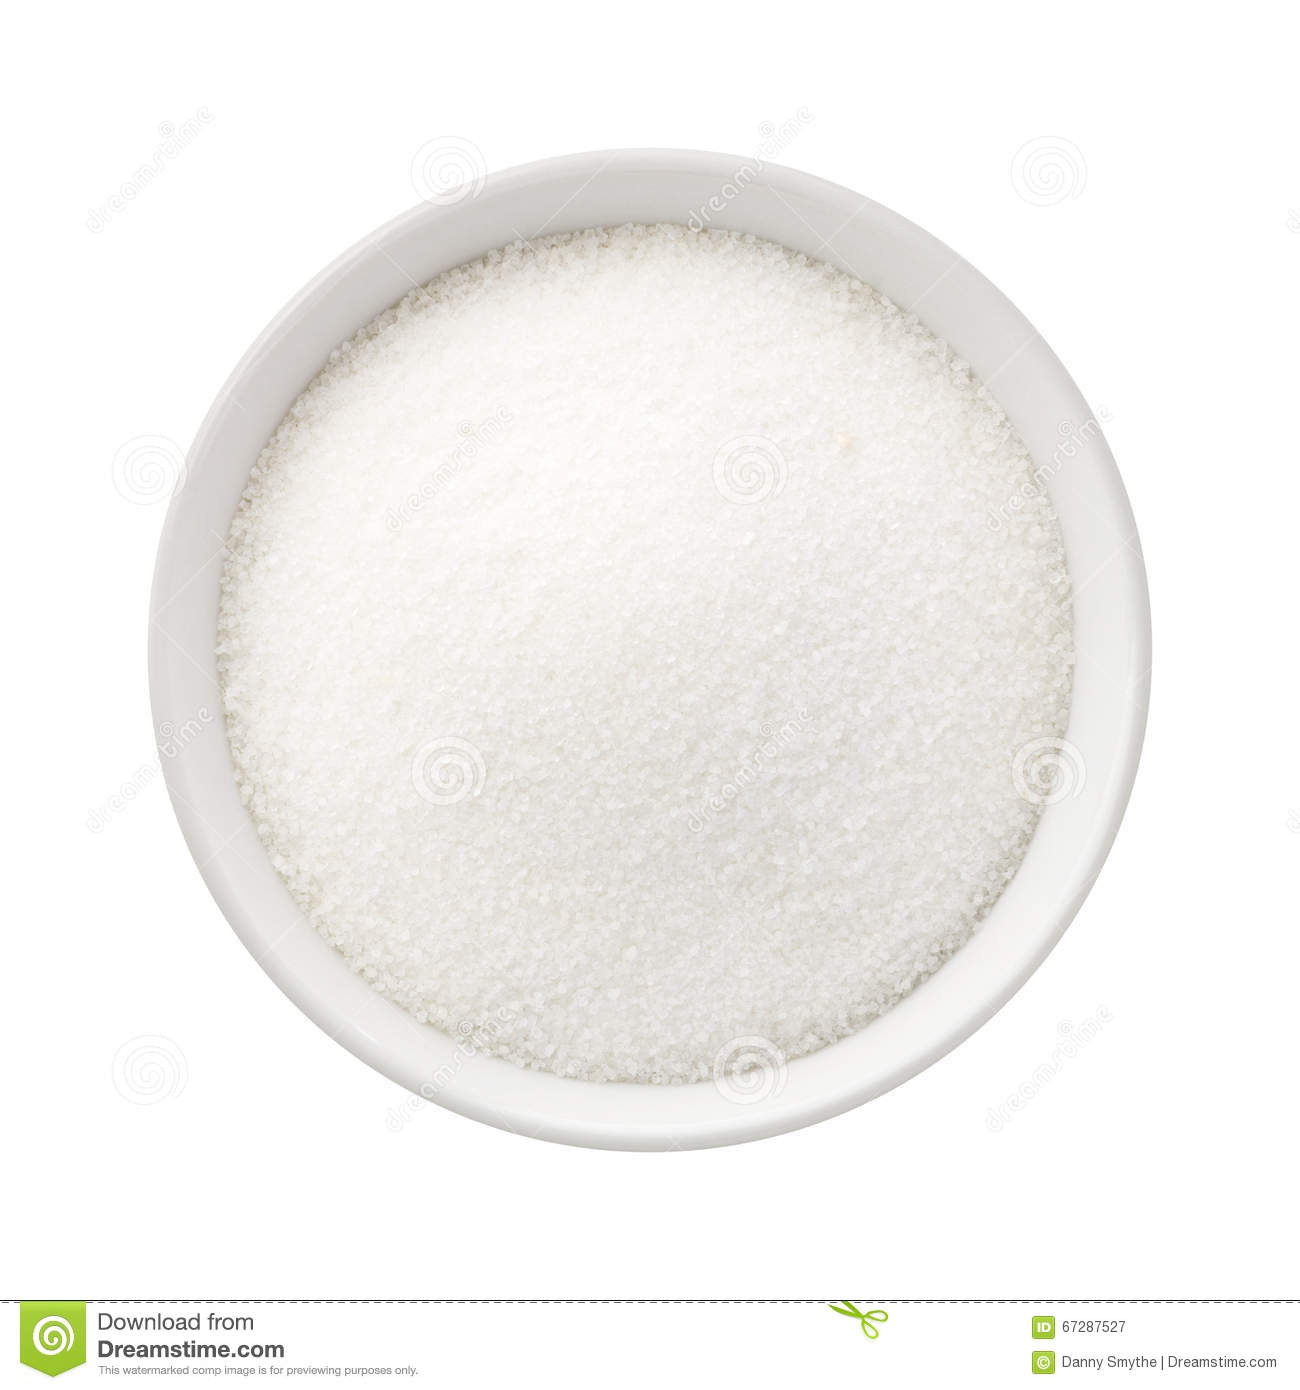 Refined Sugar In A Ceramic Bowl Stock Image